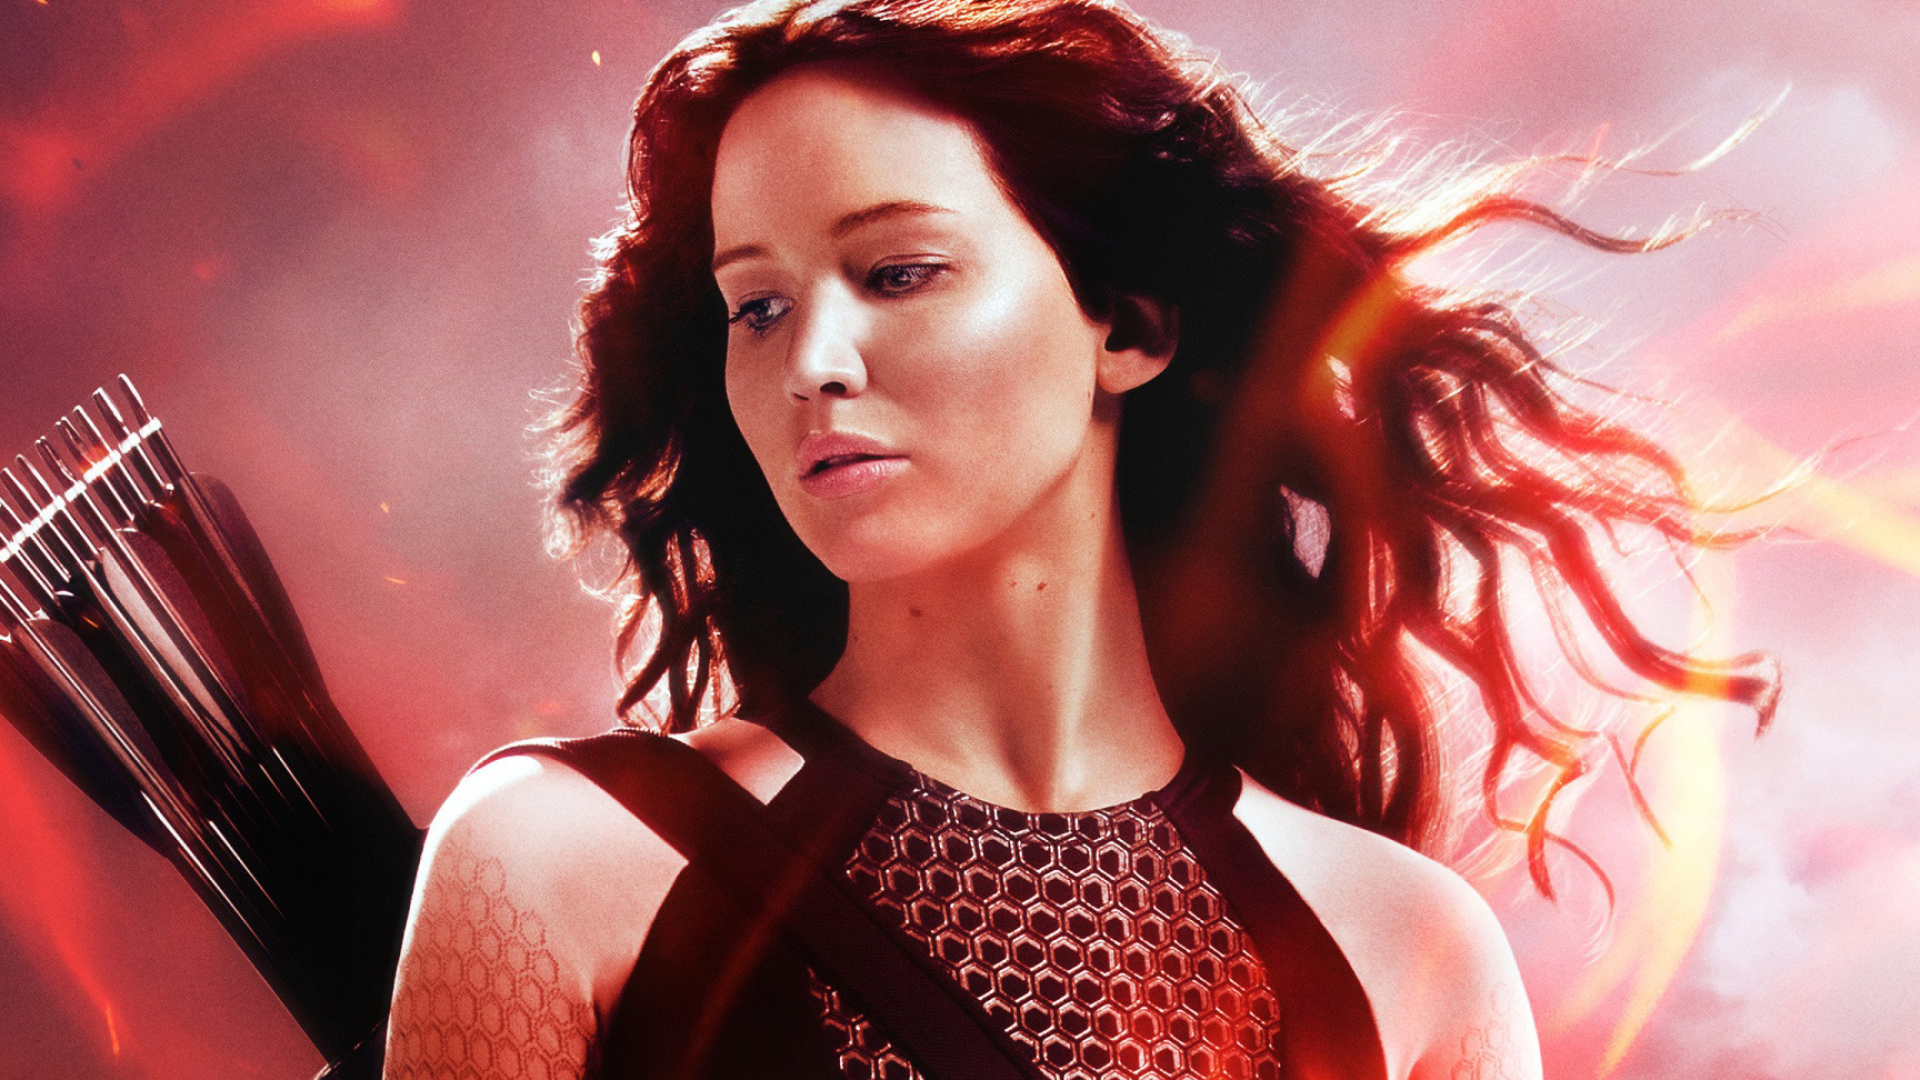 Hunger Games: Katniss Everdeen, Catching Fire, Music by James Newton Howard. 1920x1080 Full HD Wallpaper.